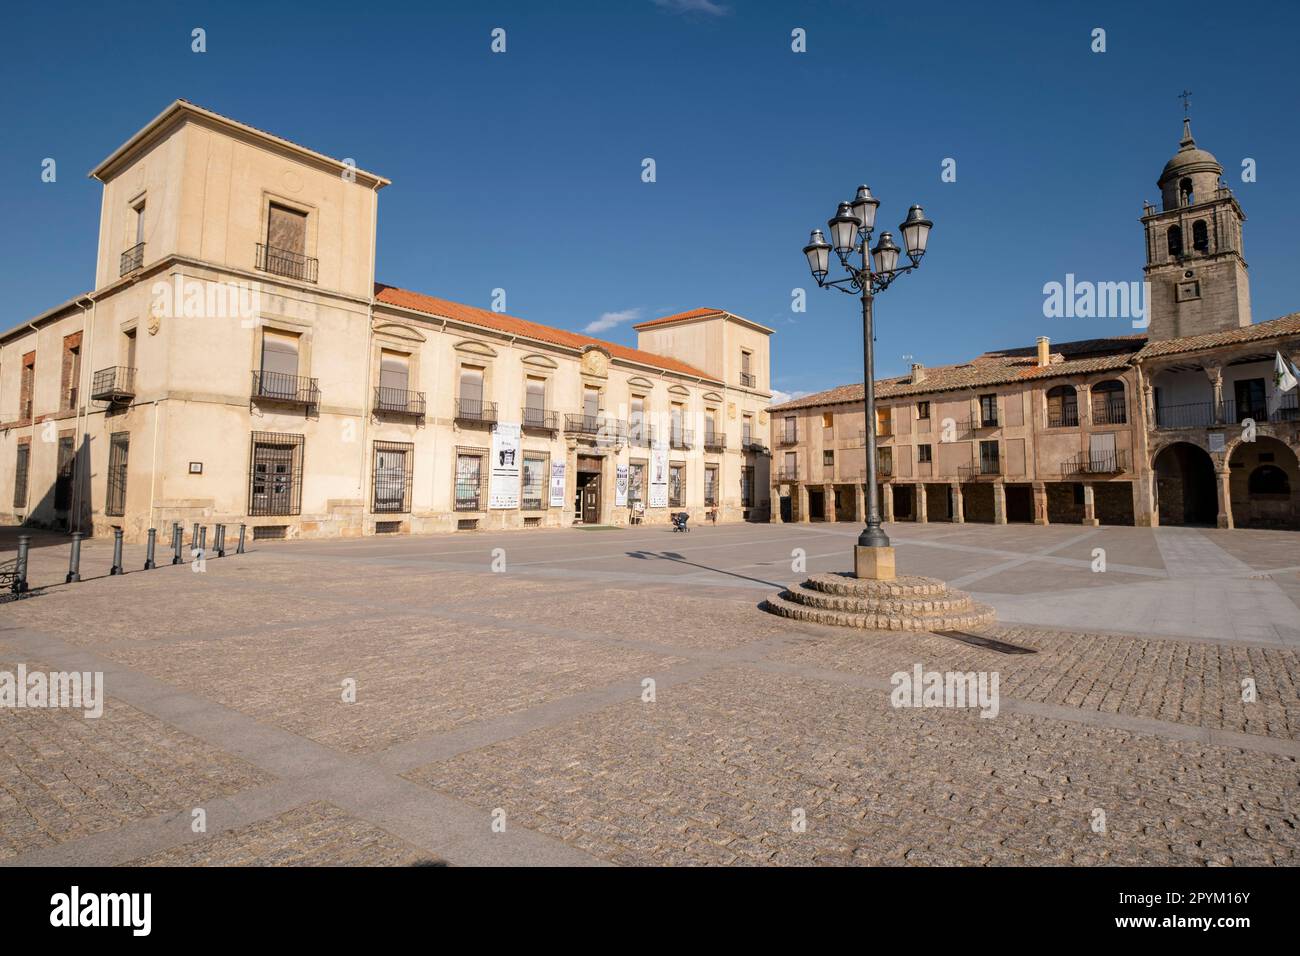 Palacio del Duque de Medinaceli, XVI-XVII, plaza Mayor, Medinaceli, Soria, comunidad autónoma de Castilla y León, Espagne, Europe Banque D'Images